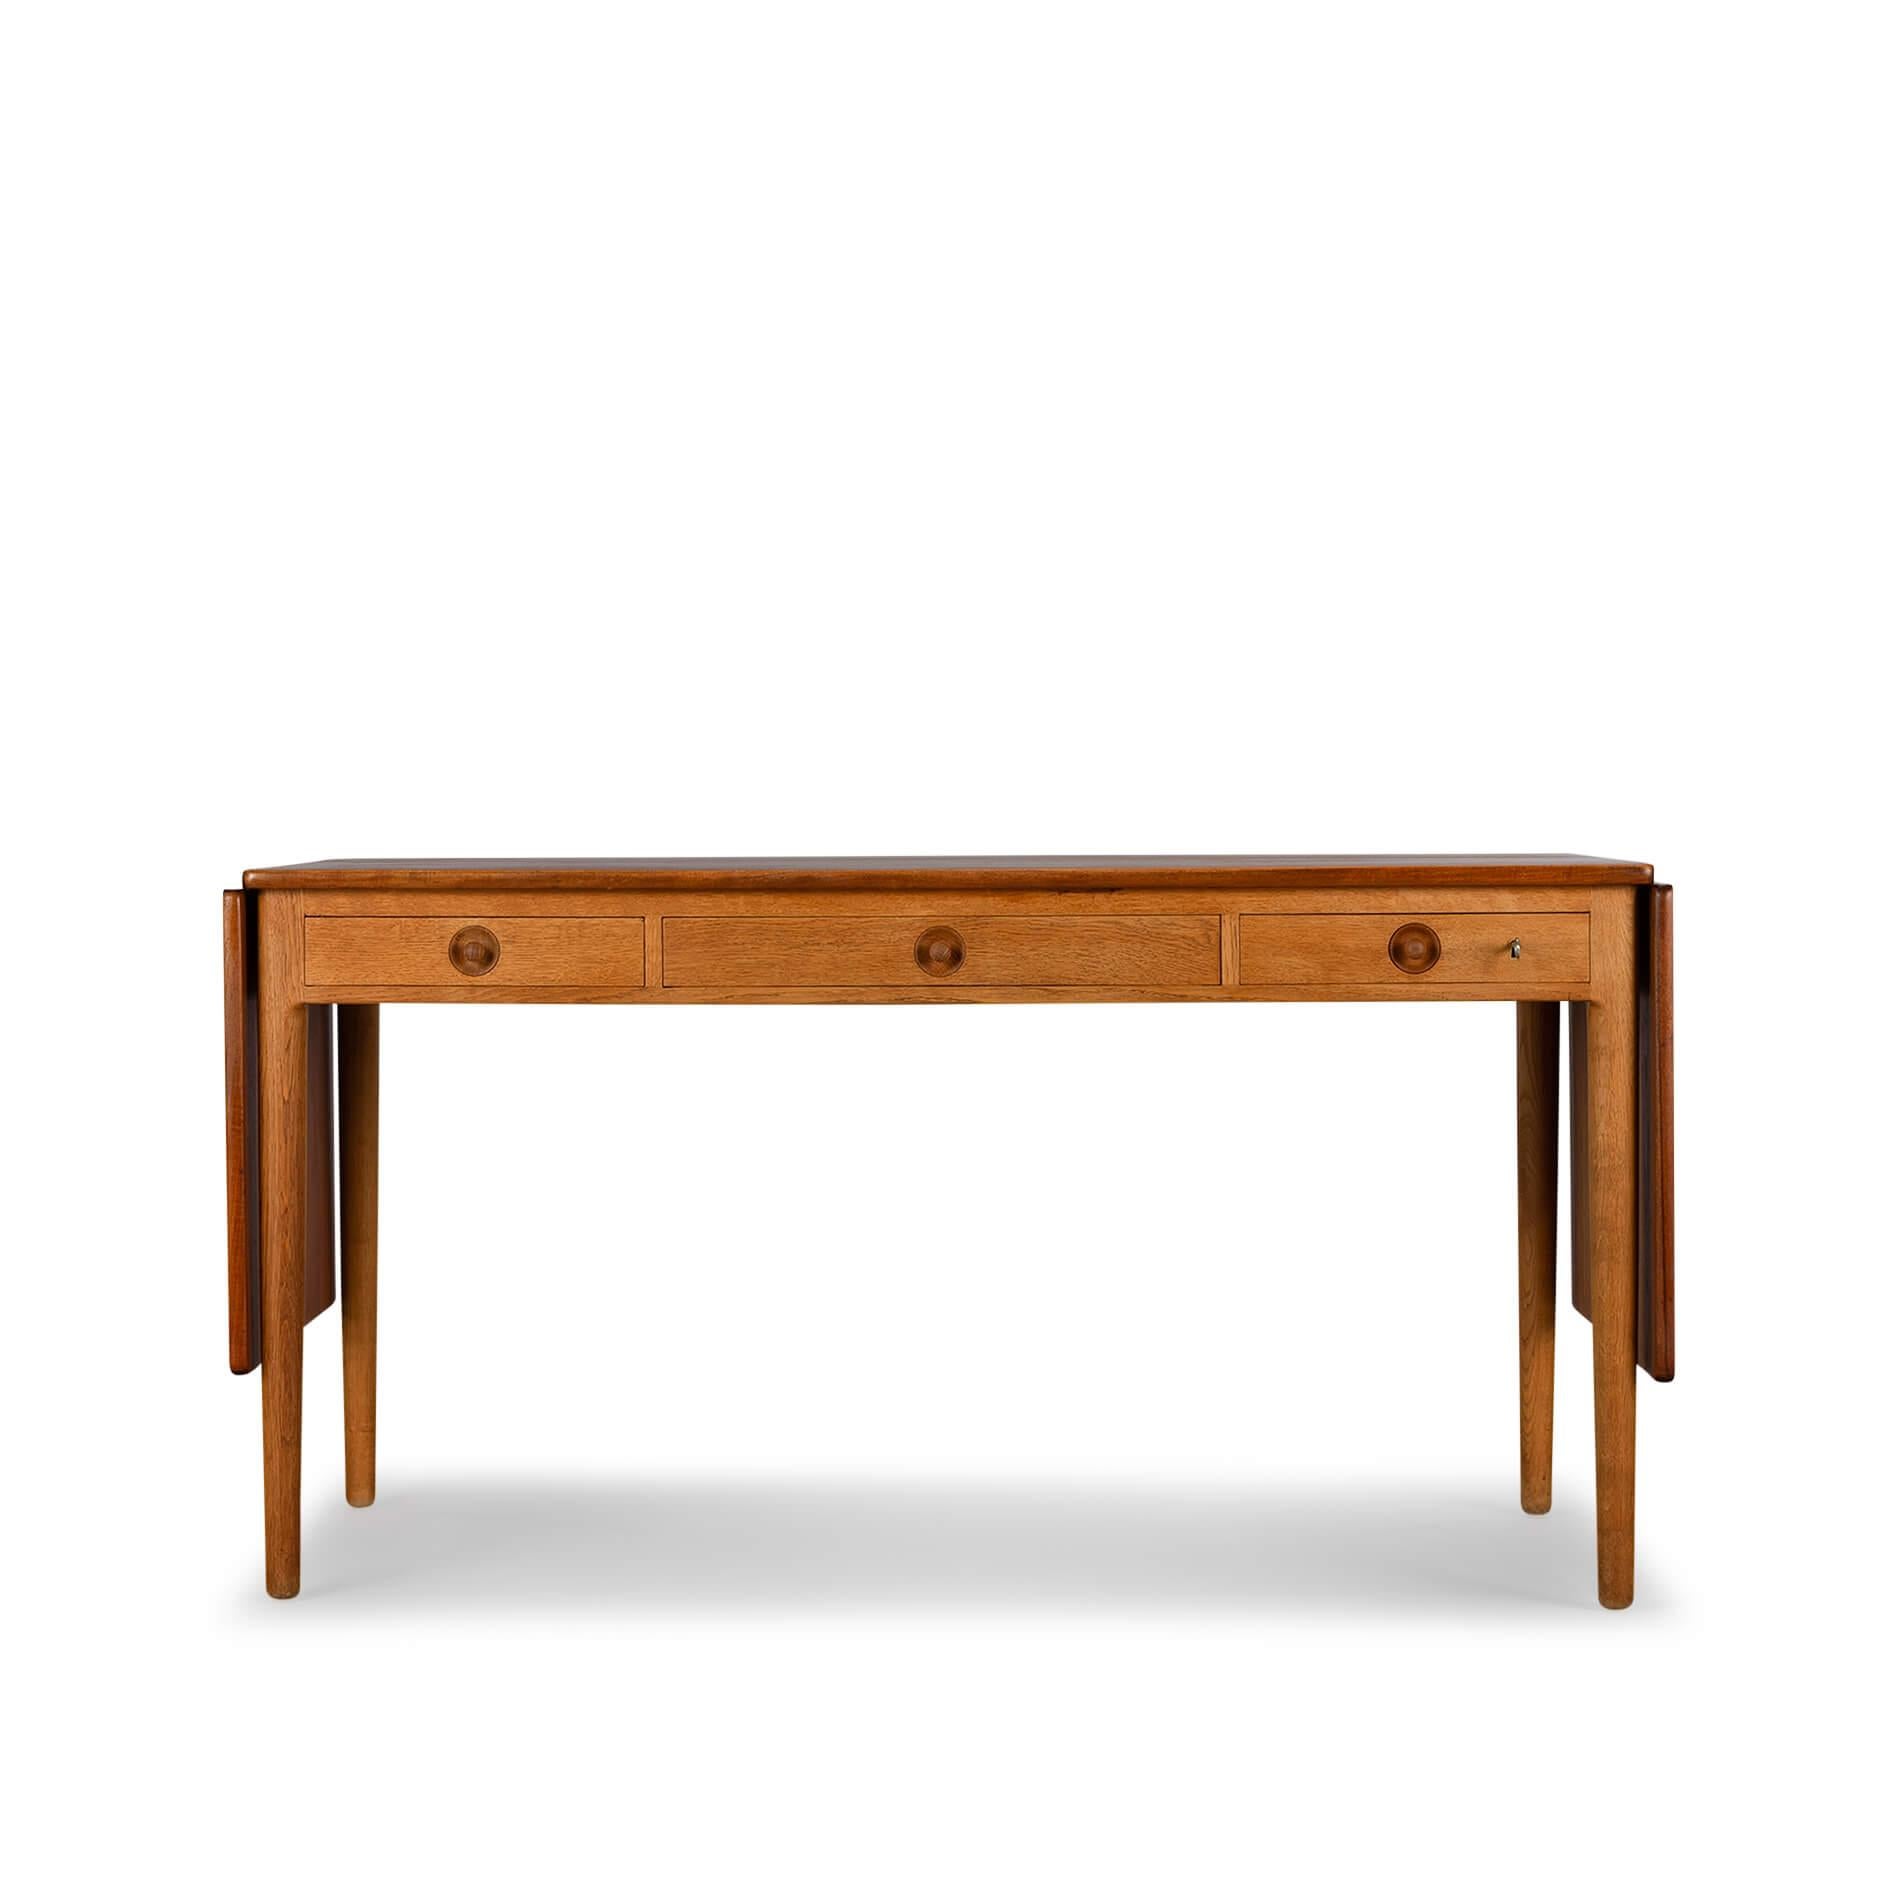 Design-Schreibtisch
Schöner Mid-Century Modern Danish Vintage Schreibtisch. Ein Klassiker! Das Modell AT-305 wurde 1955 von Hans J. Wegner entworfen und von Adreas Tuck produziert und vermarktet. Der Design-Schreibtisch hat ein Eichengestell mit